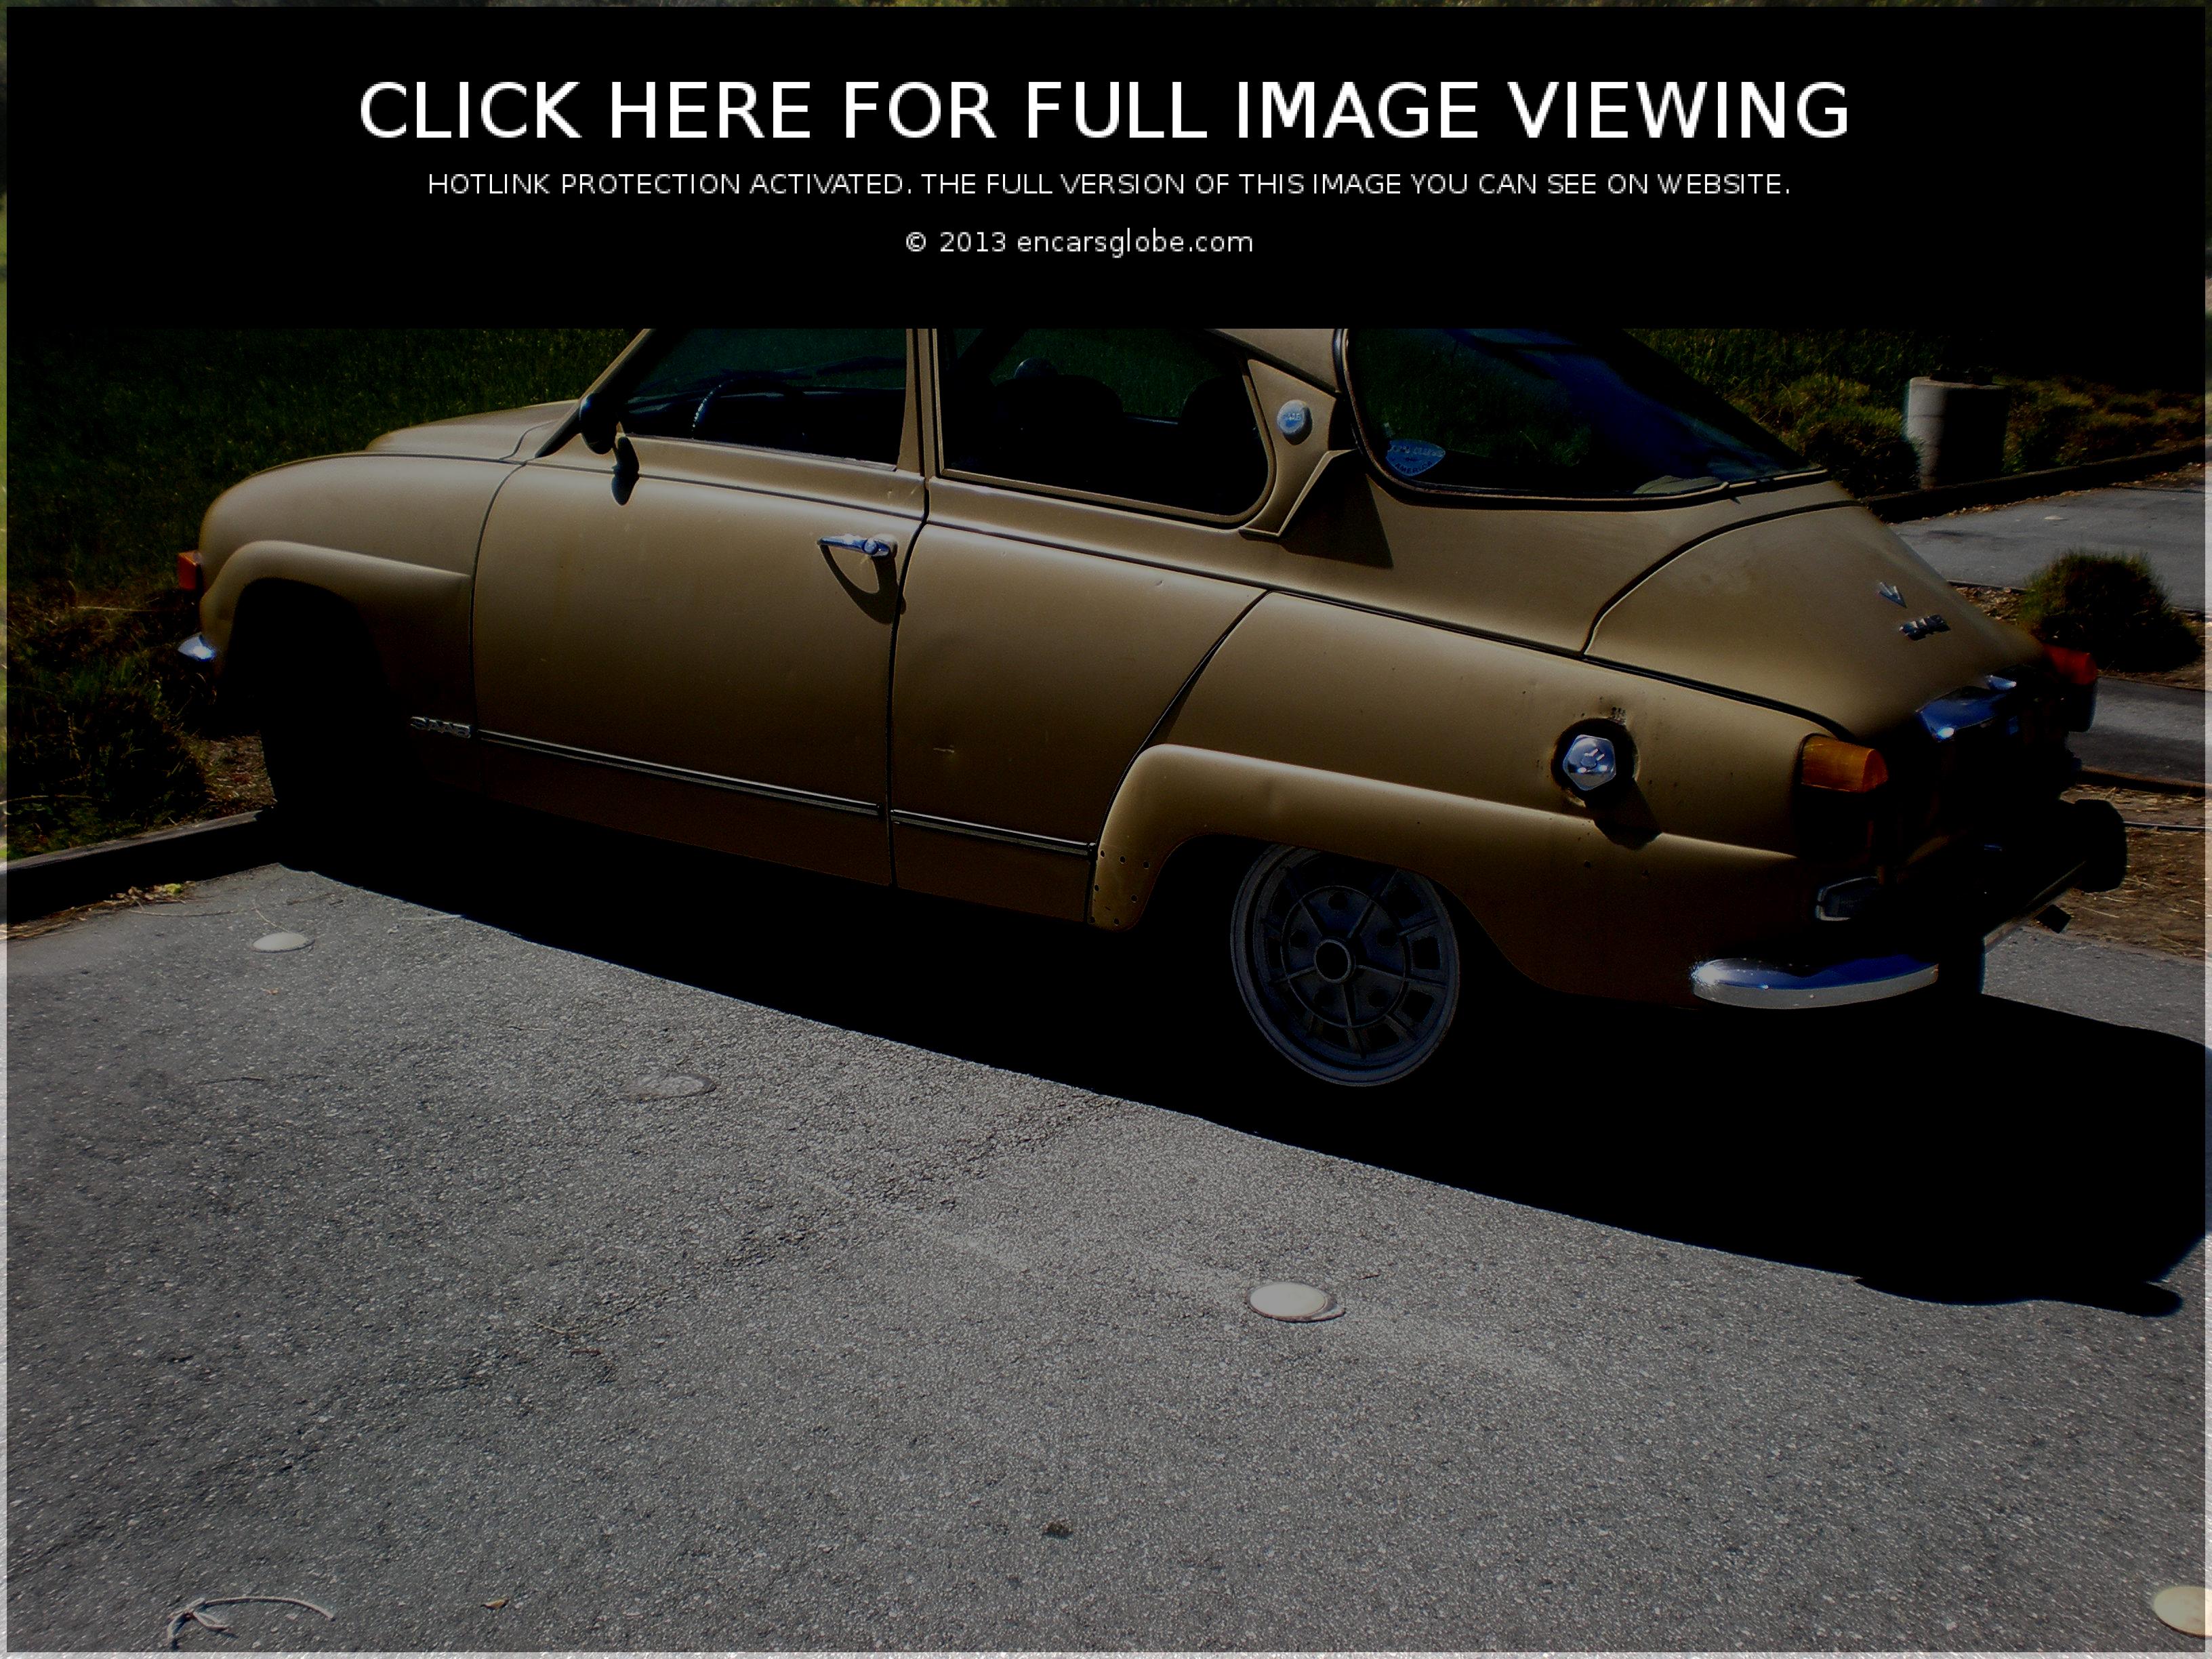 Saab 96: Description du modèle, galerie de photos, modifications...